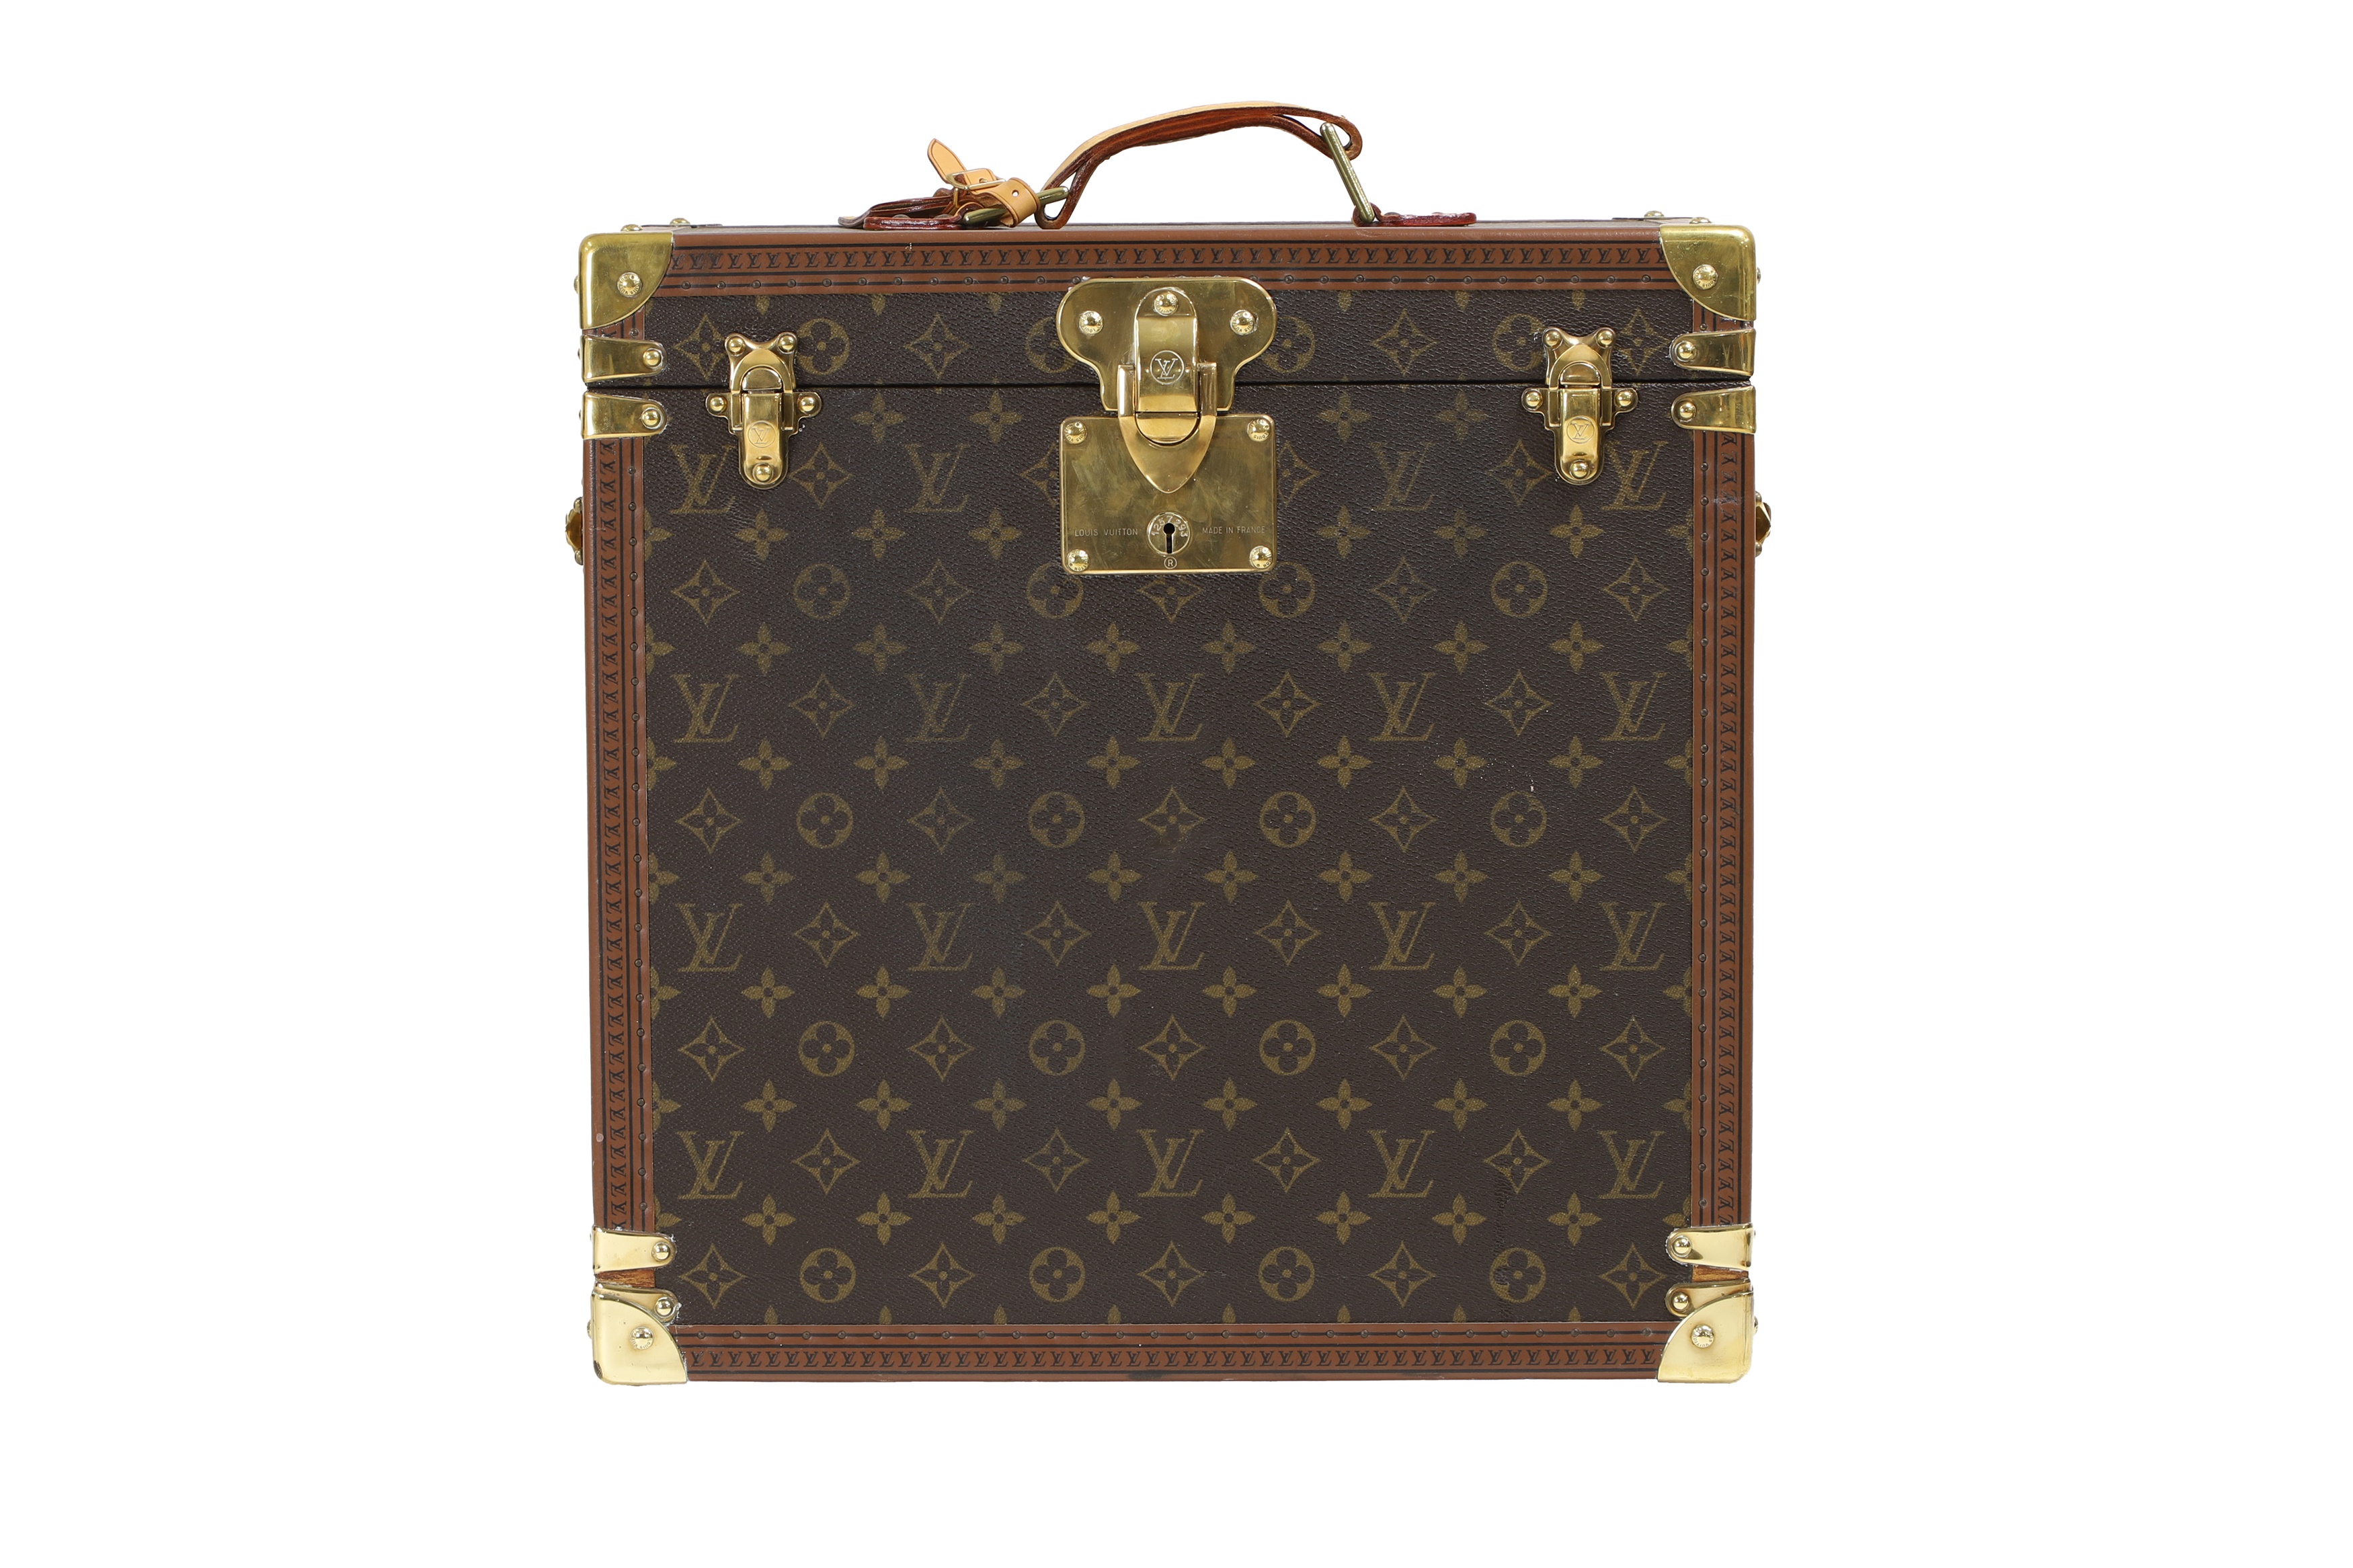 A Louis Vuitton monogrammed canvas watch trunk (£12,000-15,000)